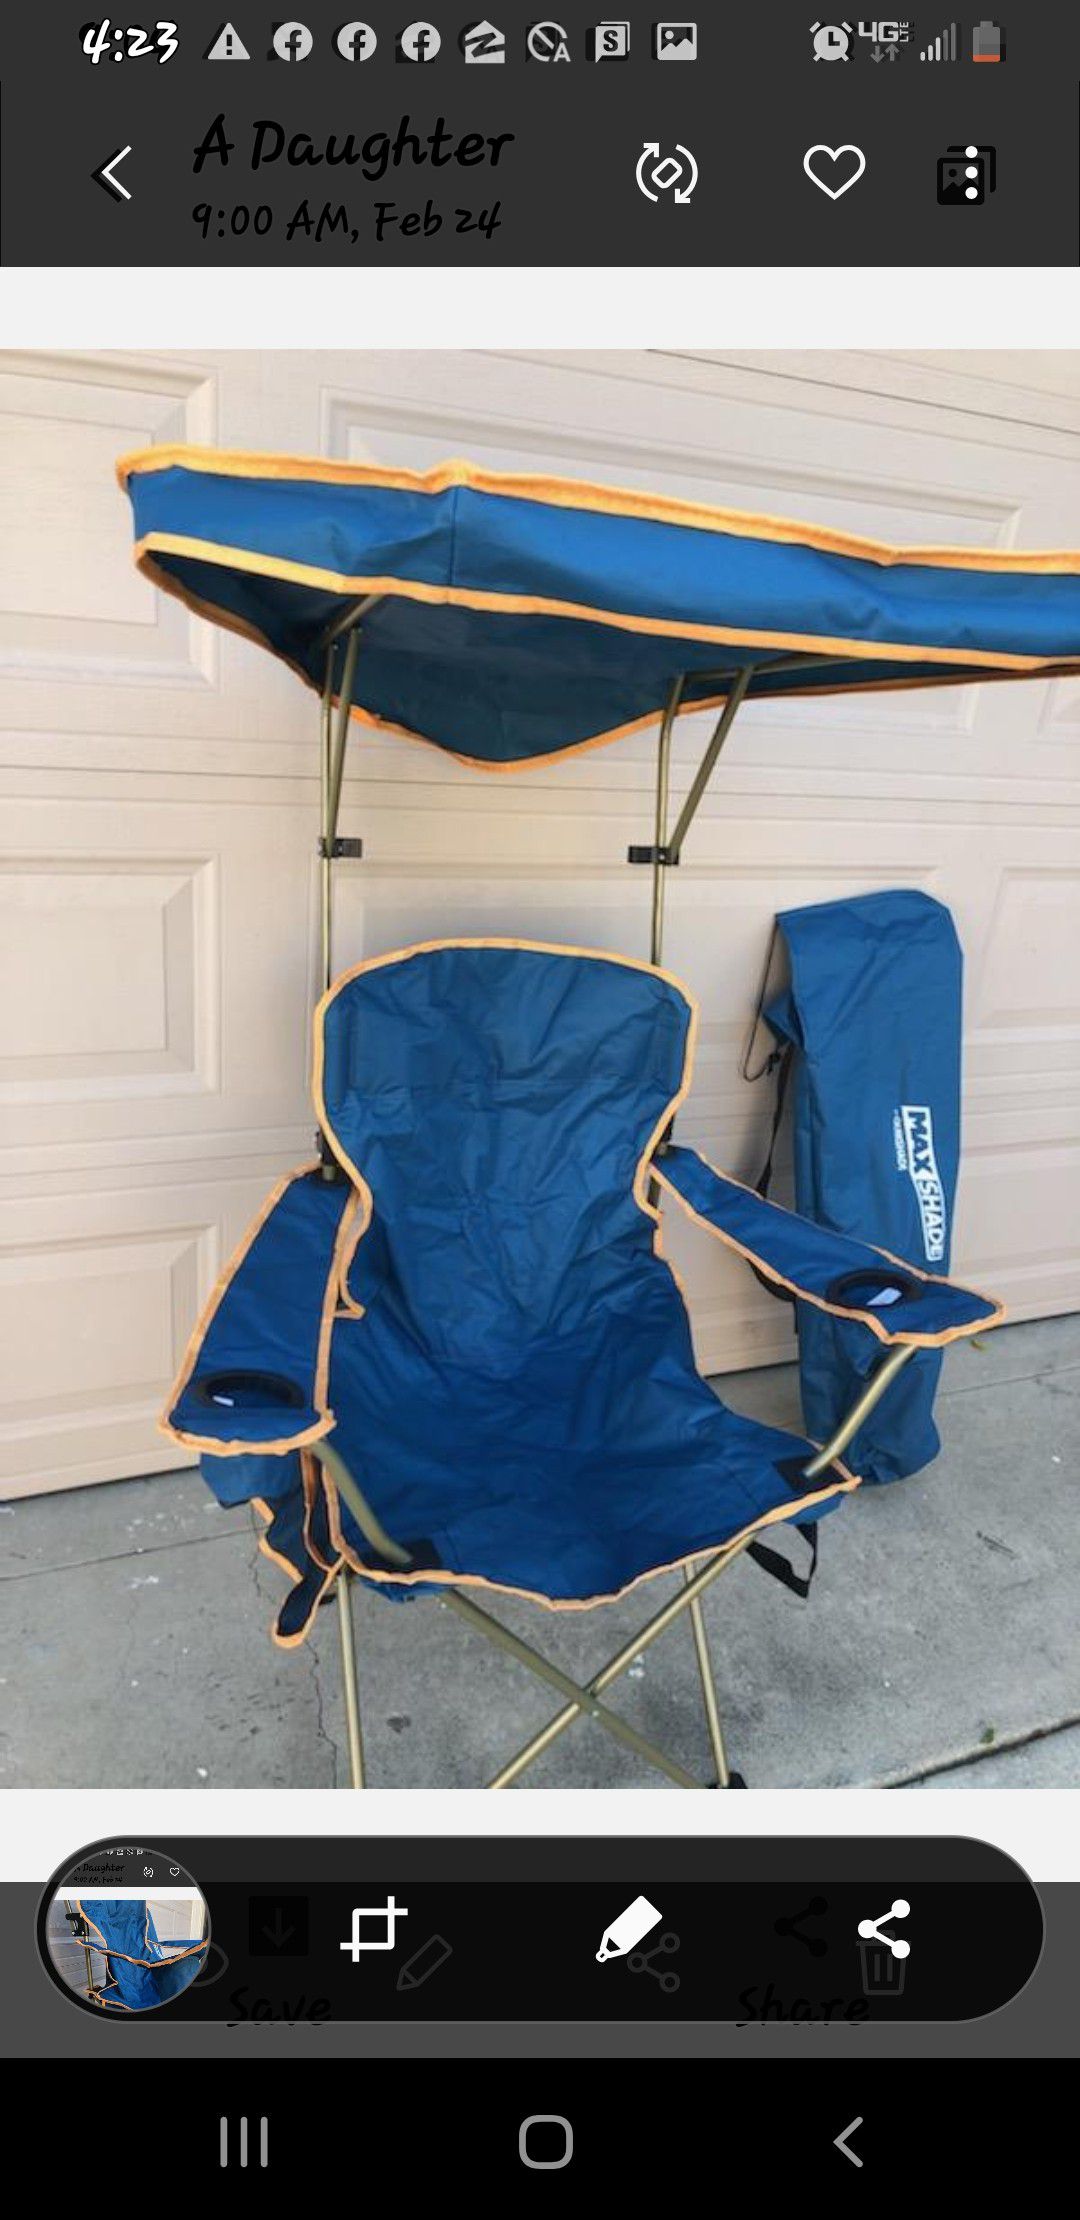 Heavy duty, teal color , sunbrella summer chair.